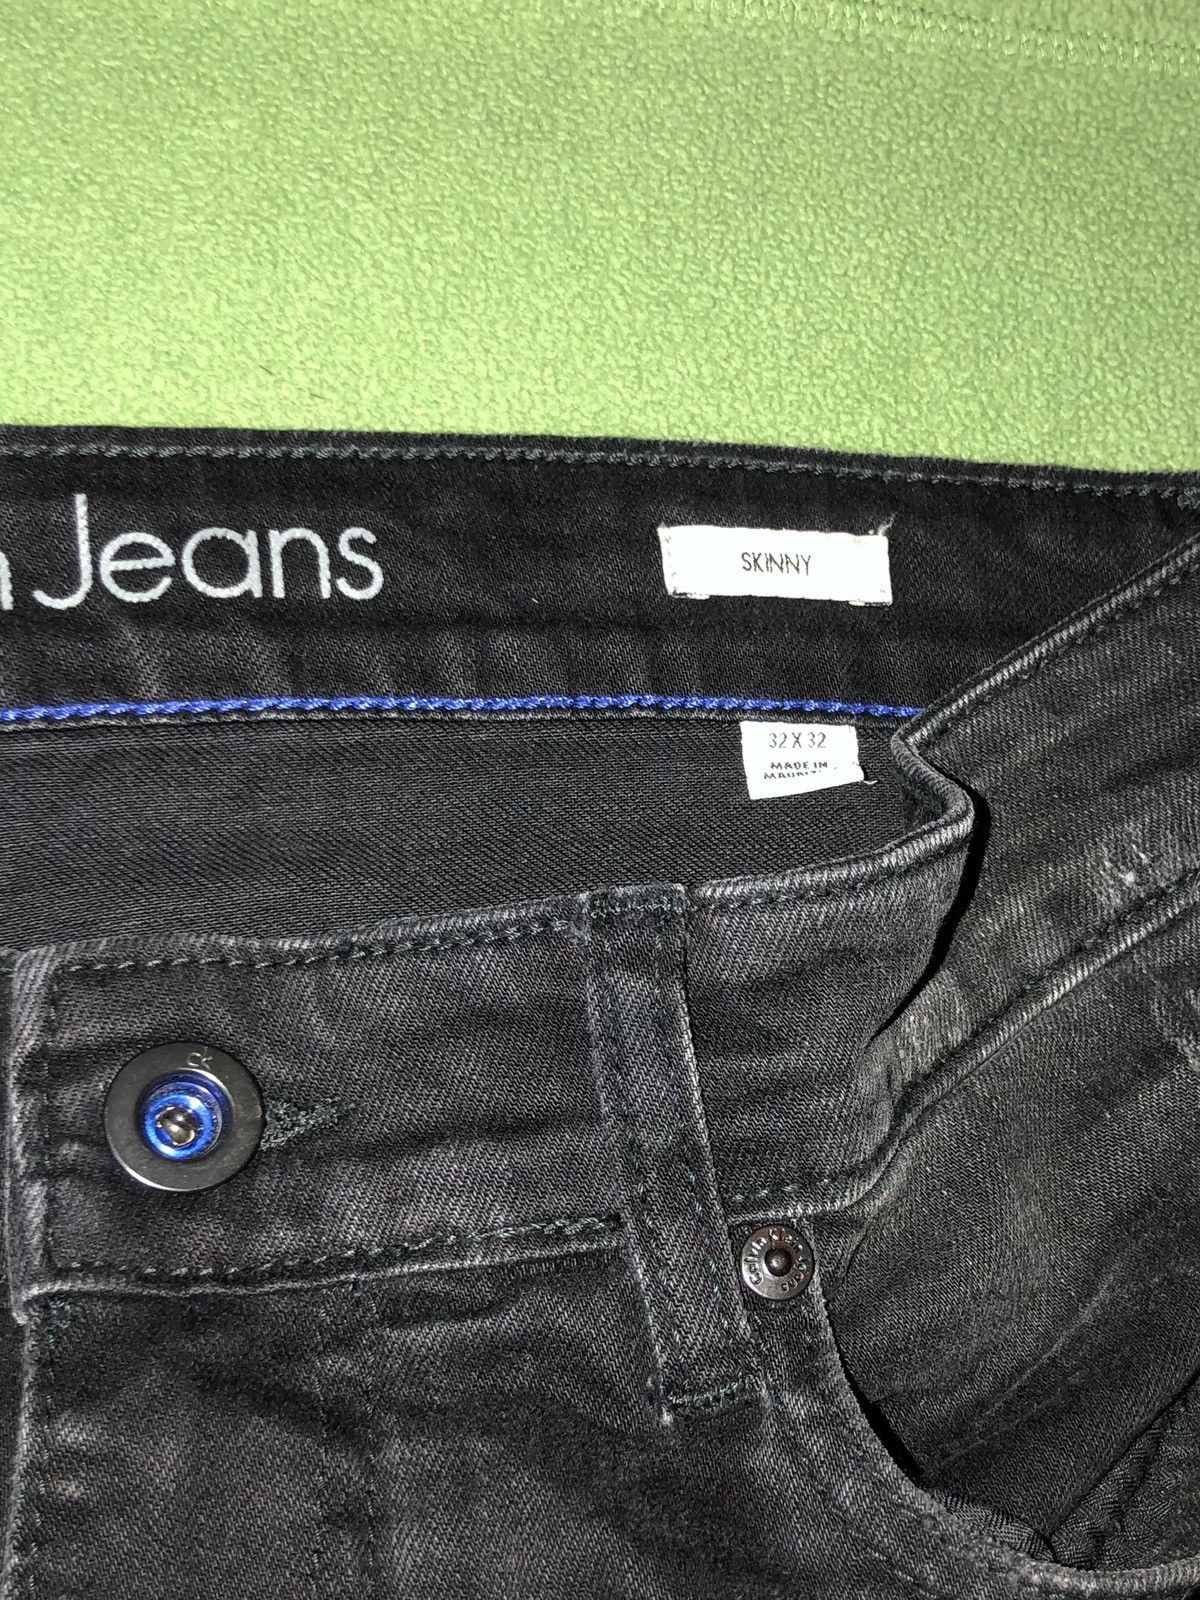 Calvin Klein Biker Jeans Size US 32 / EU 48 - 3 Thumbnail